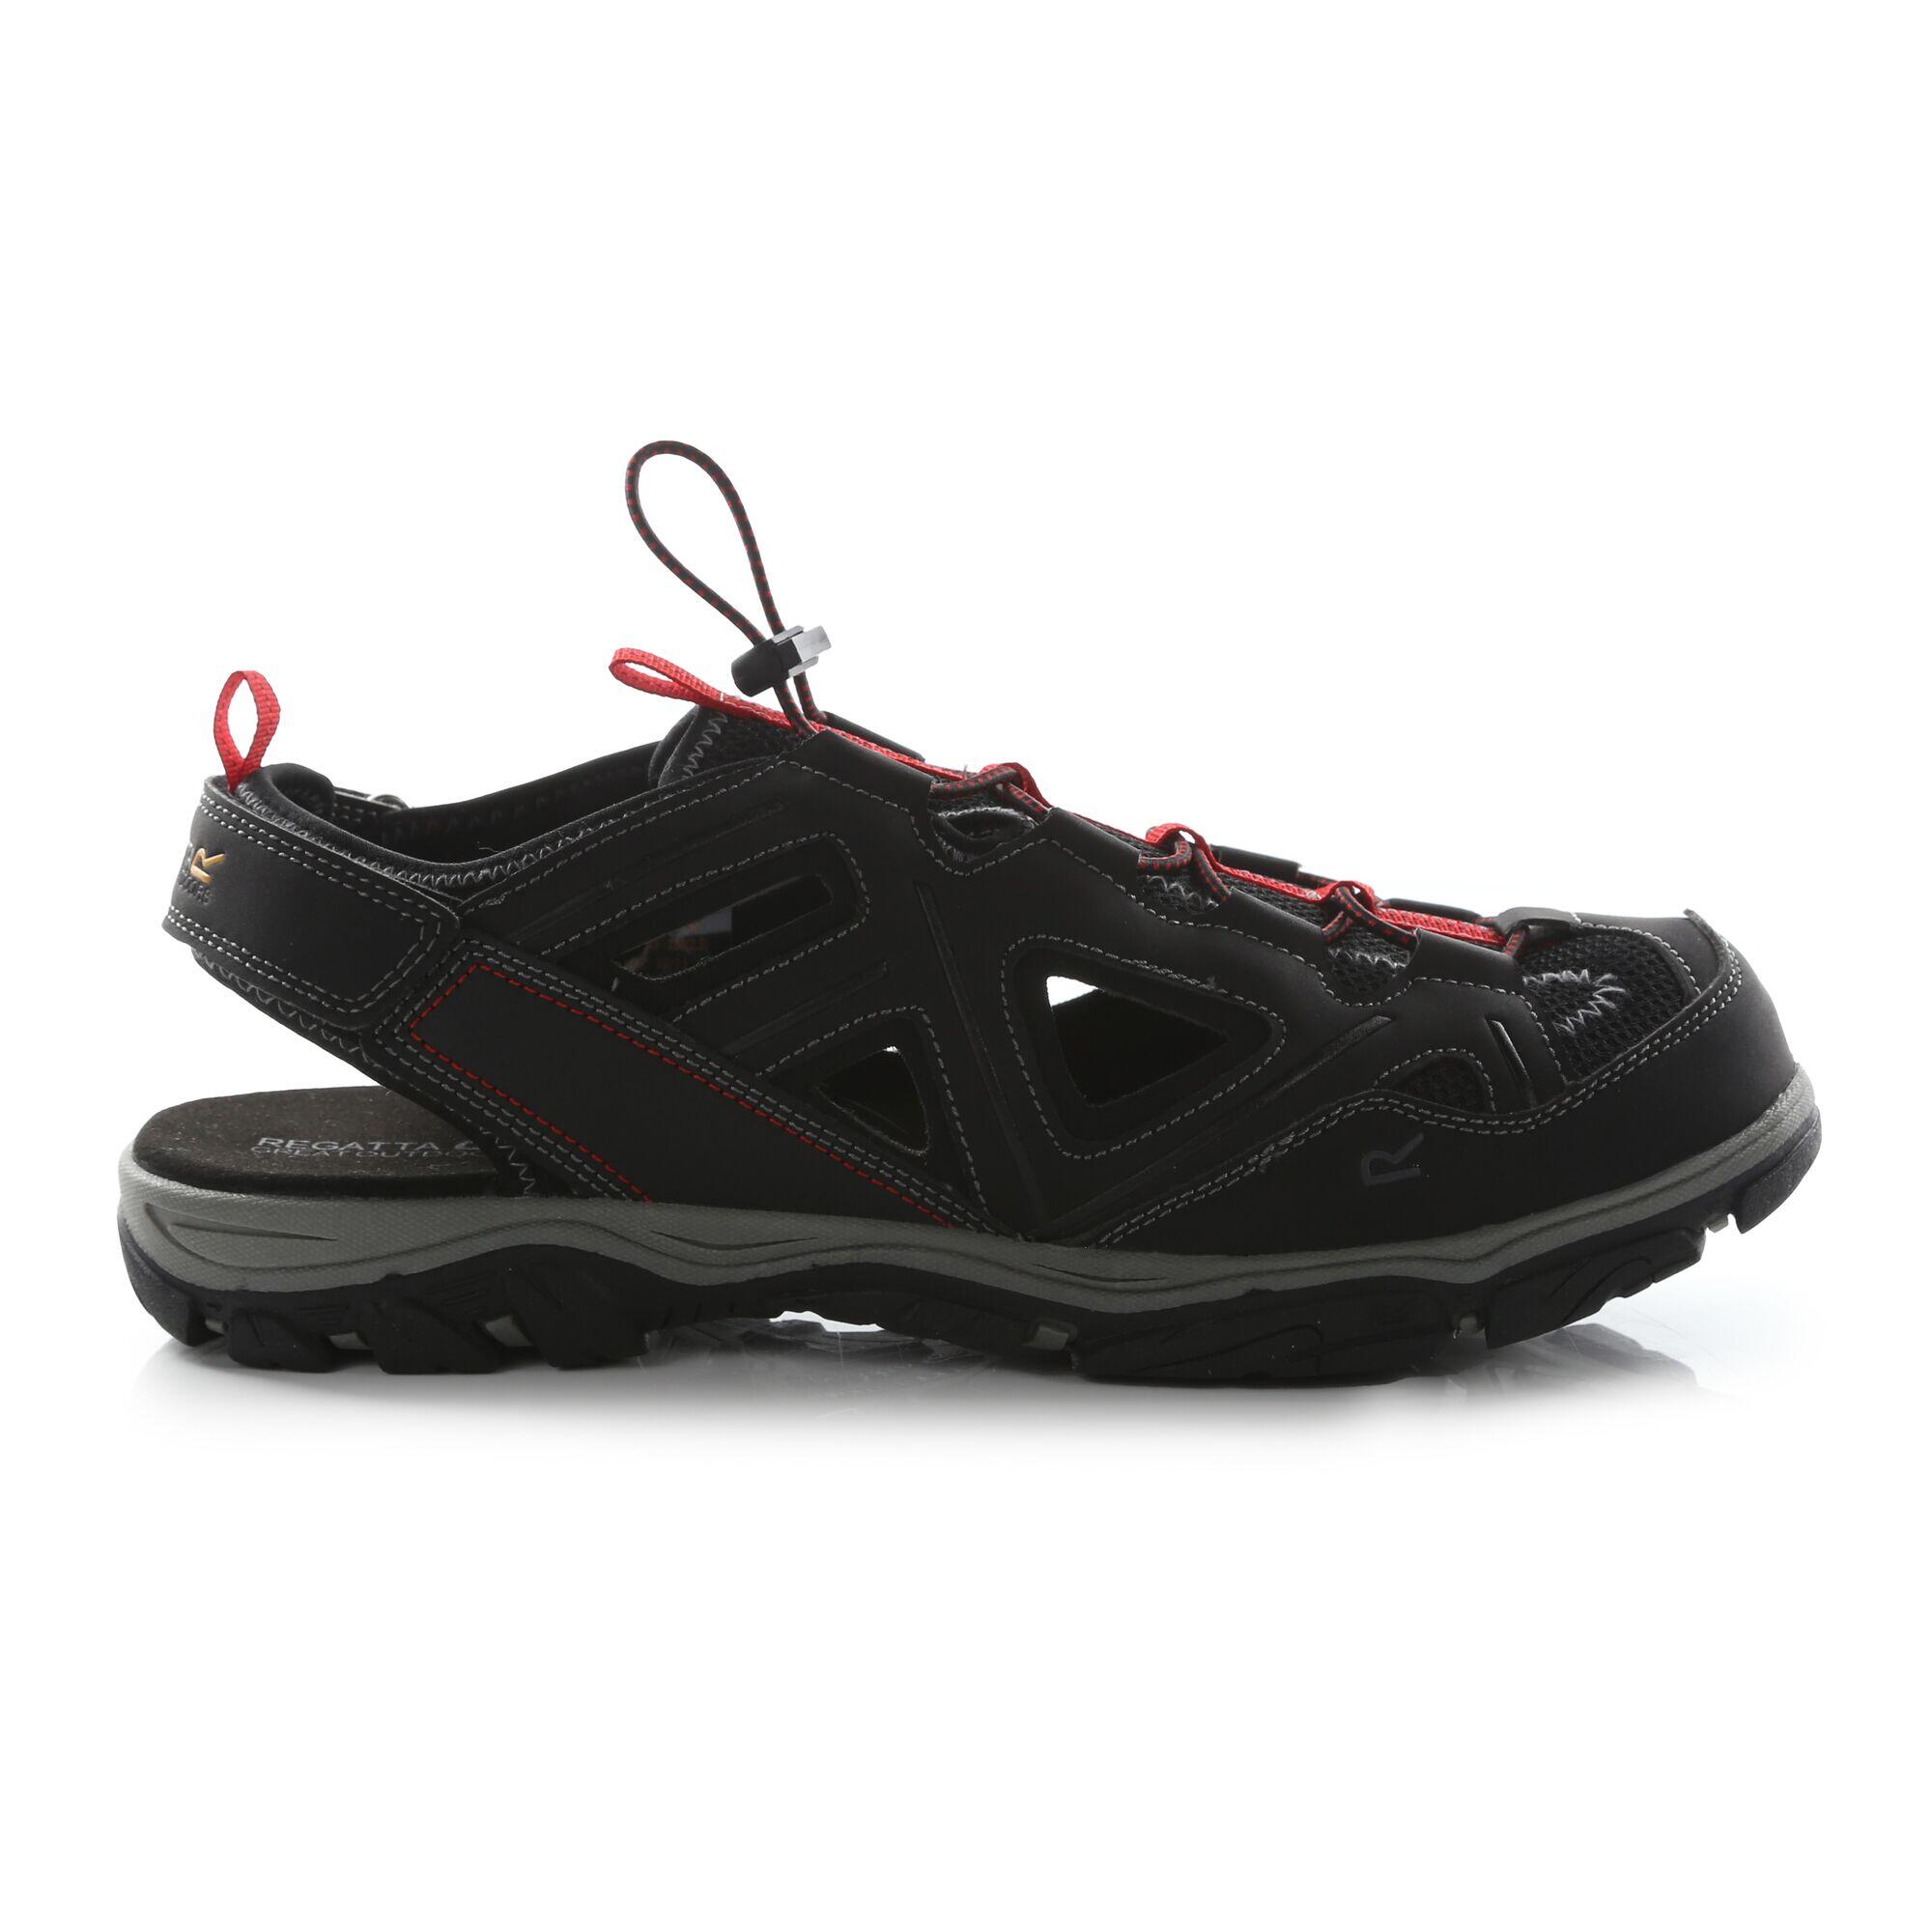 Westshore 3 Men's Hiking Sandals - Black / Red 1/5